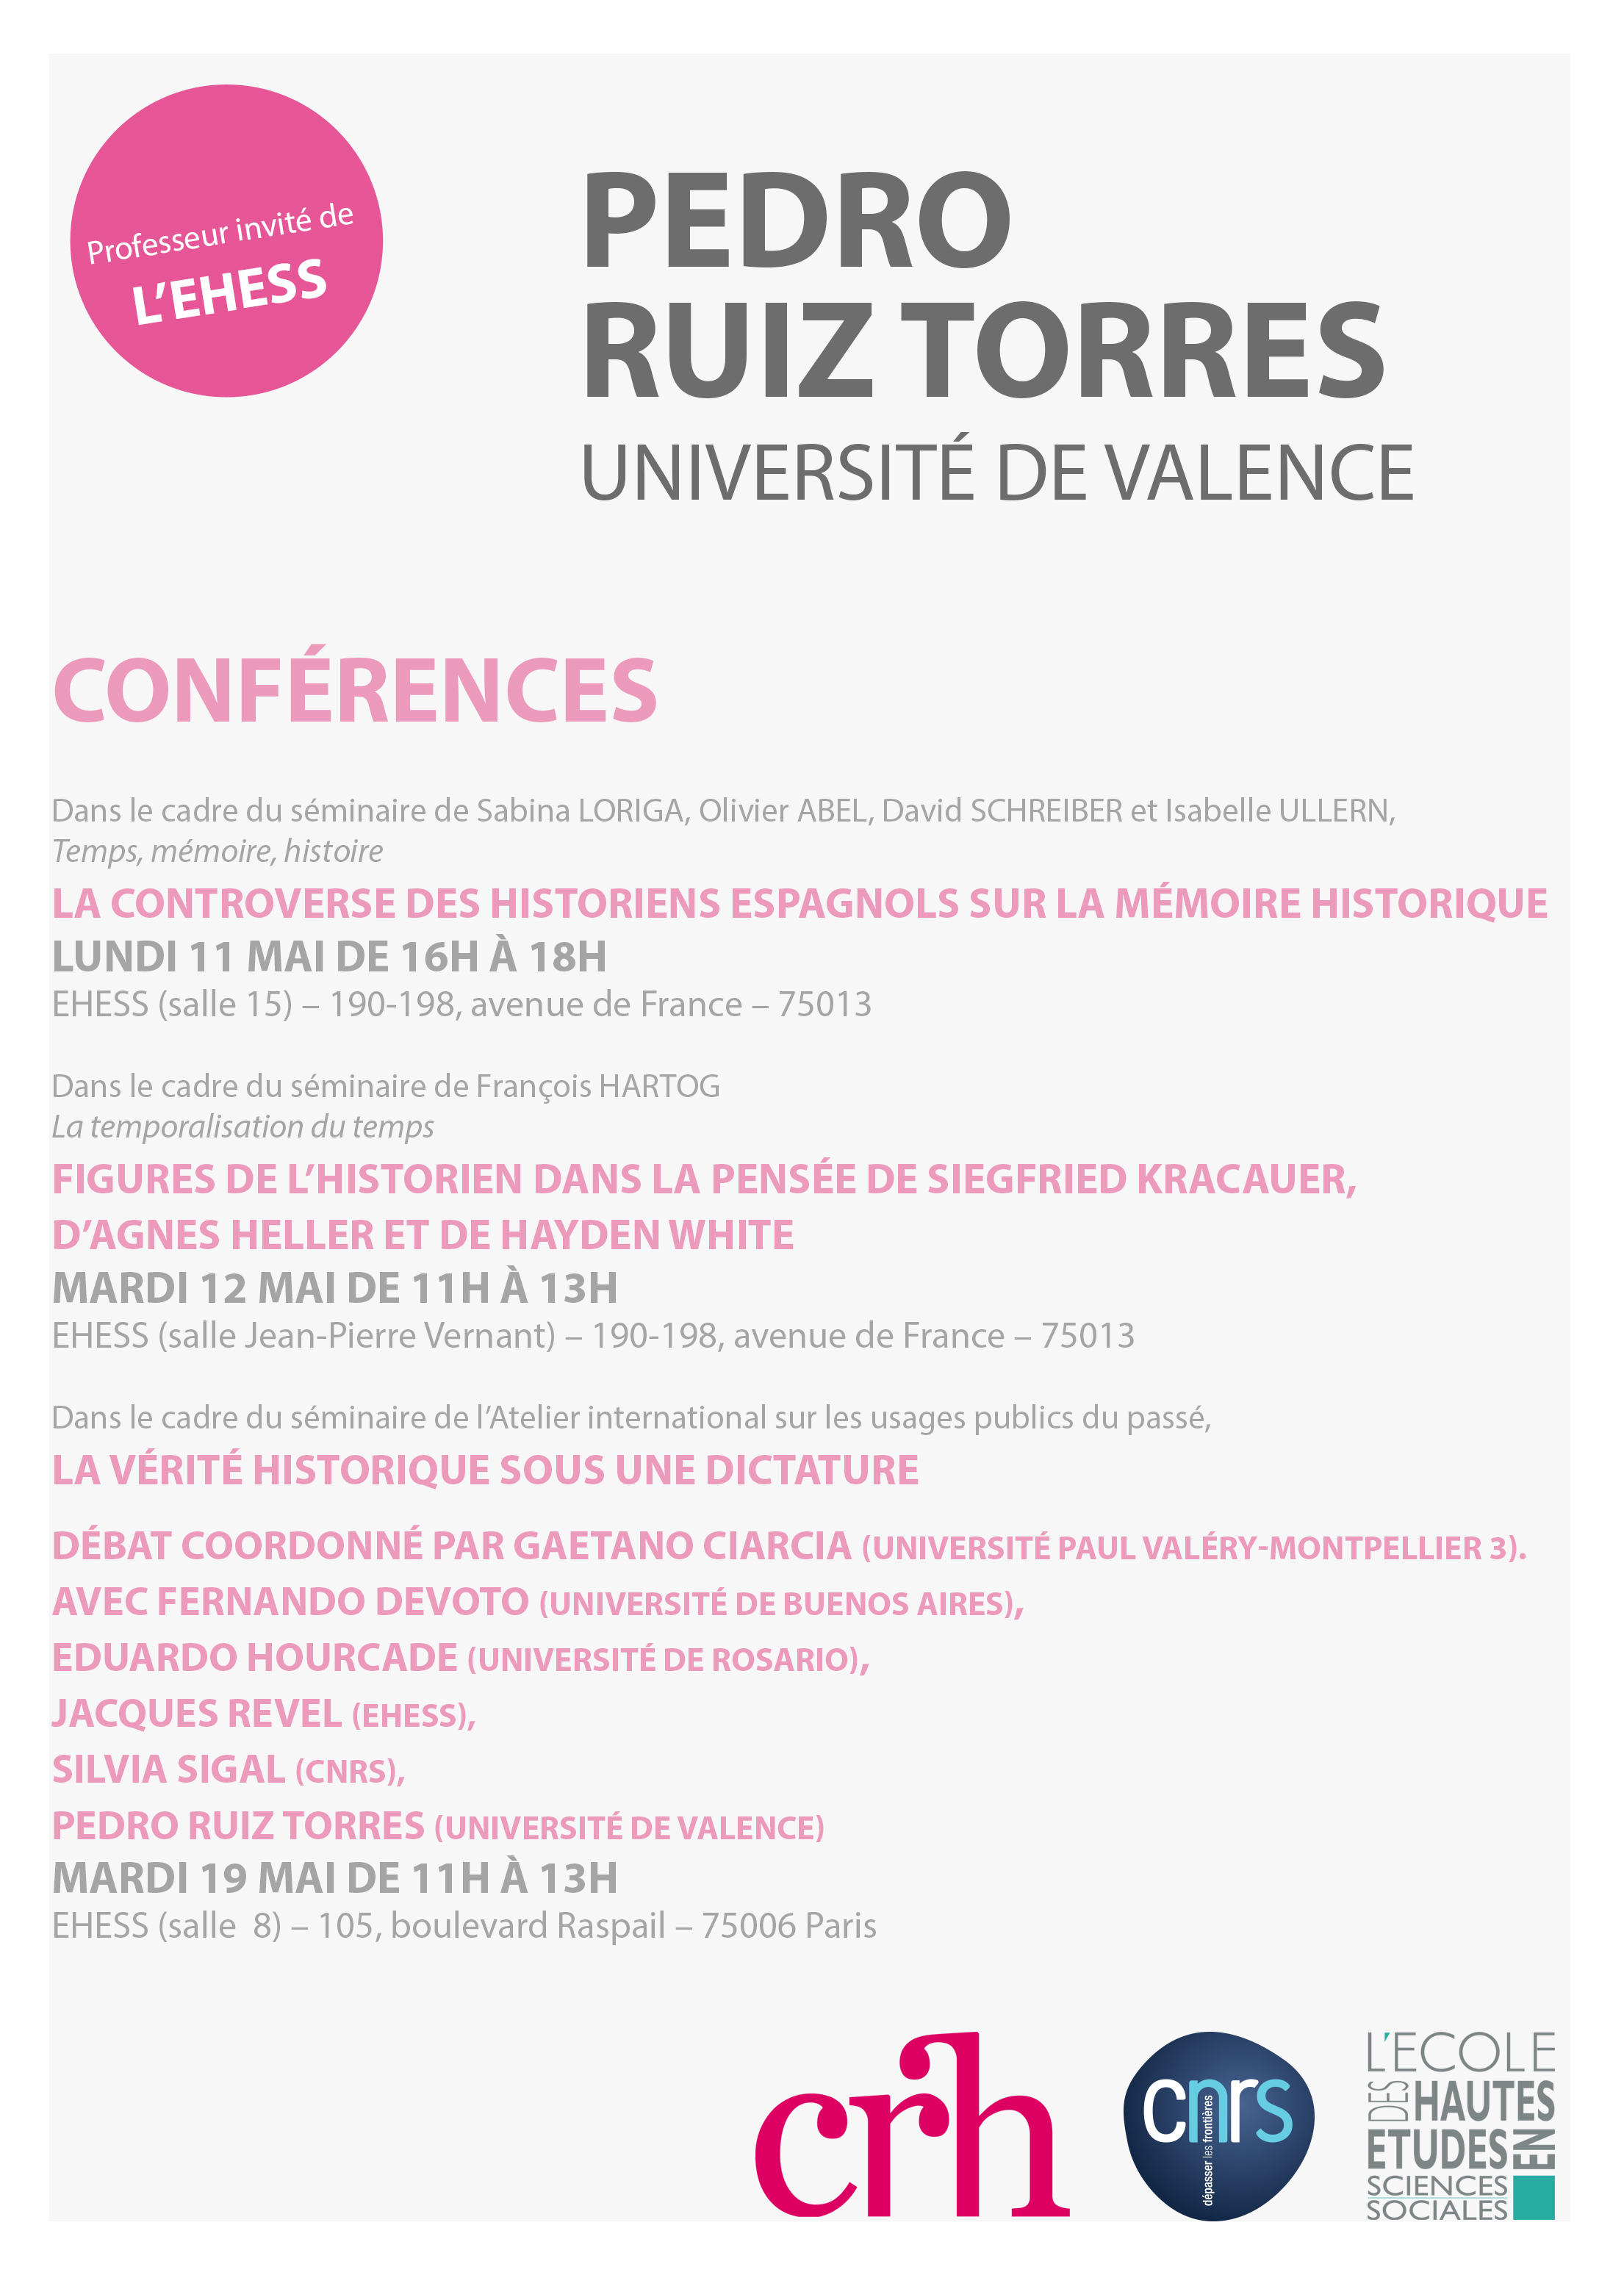 Conférences de Pedro Ruiz Torres